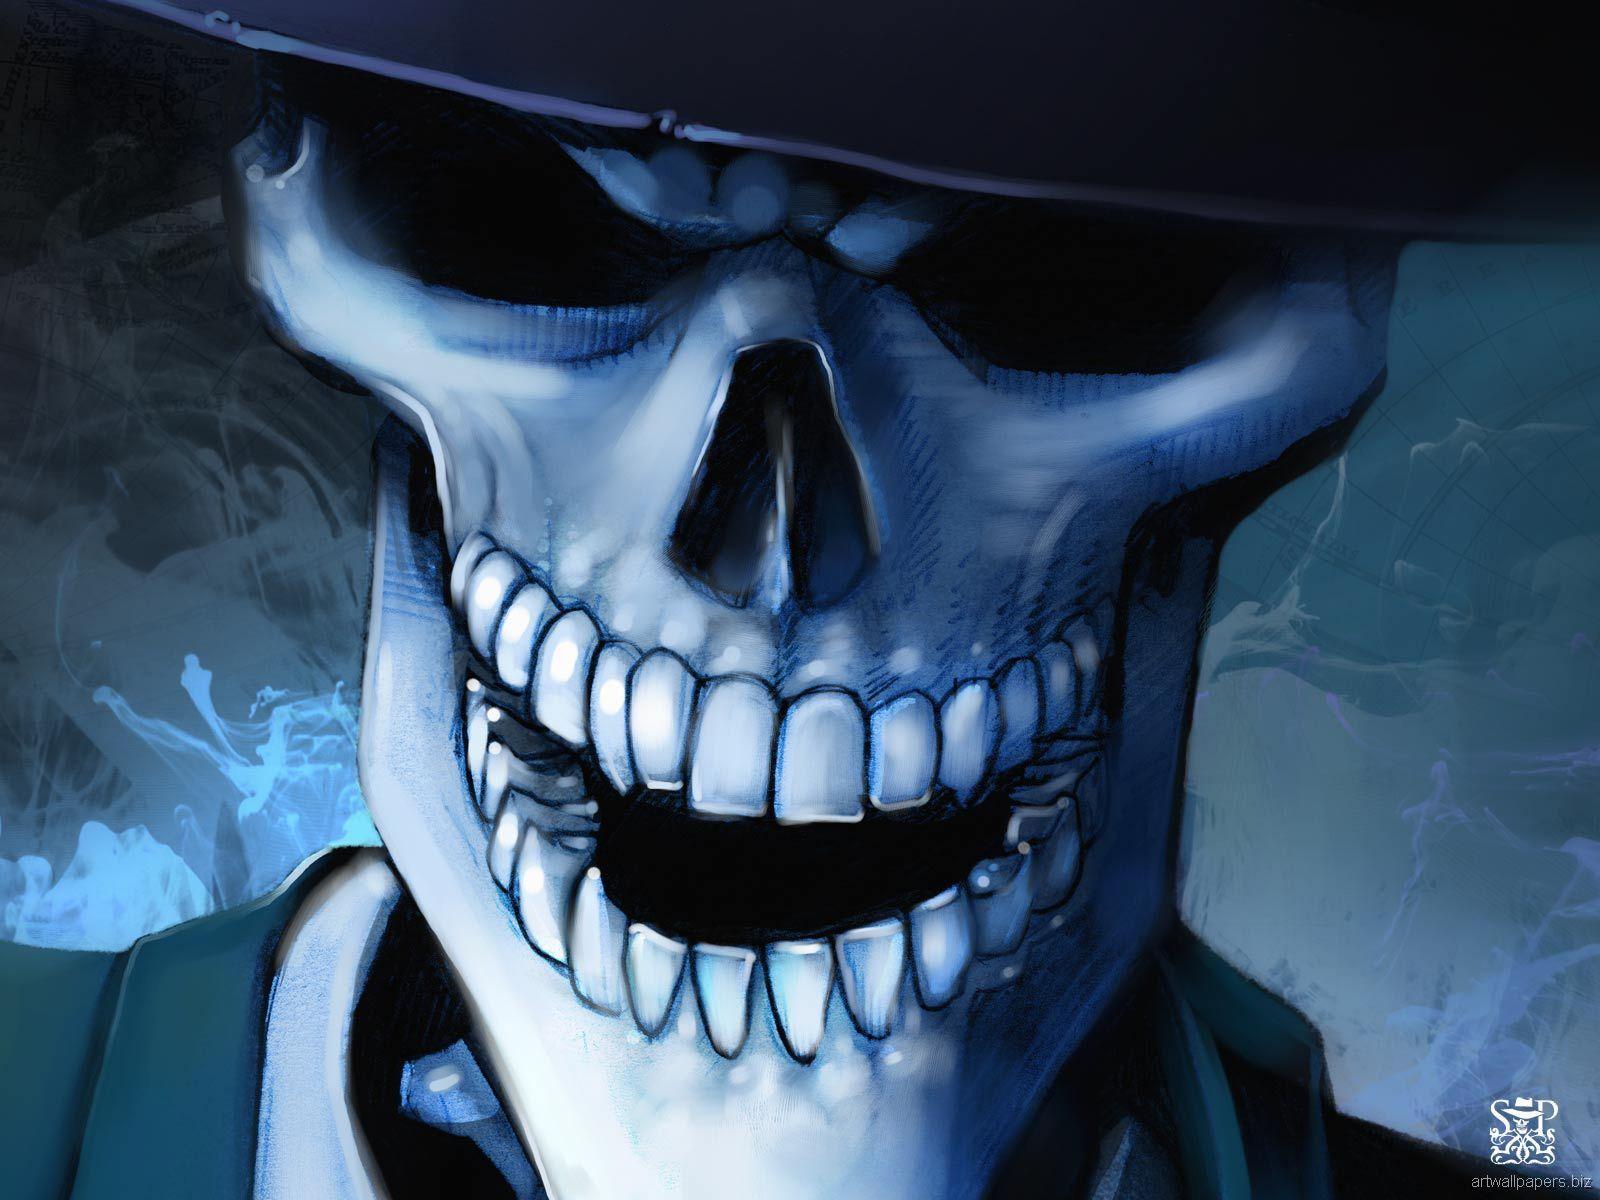 image For > Cool Skulls Background